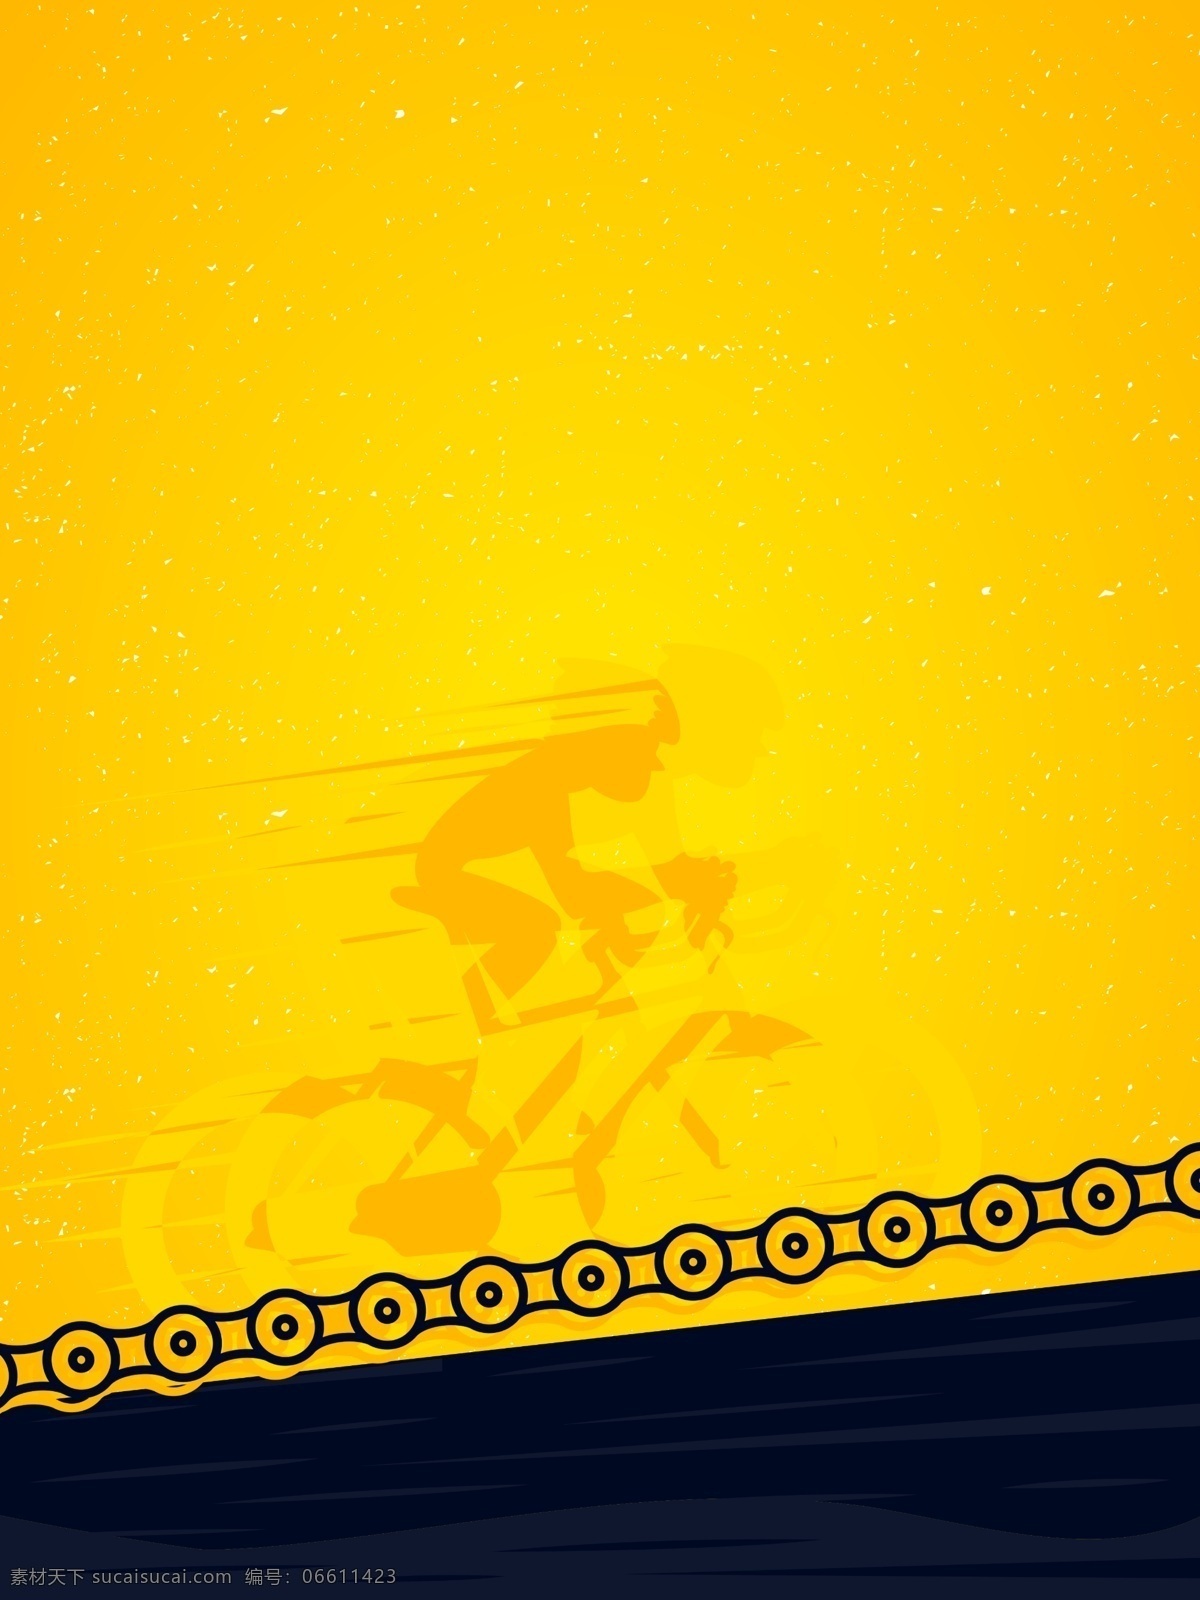 黄色 世界 自行车 锦标赛 背景 通用背景 广告背景 比赛 体育运动 车广告背景 自行车锦标赛